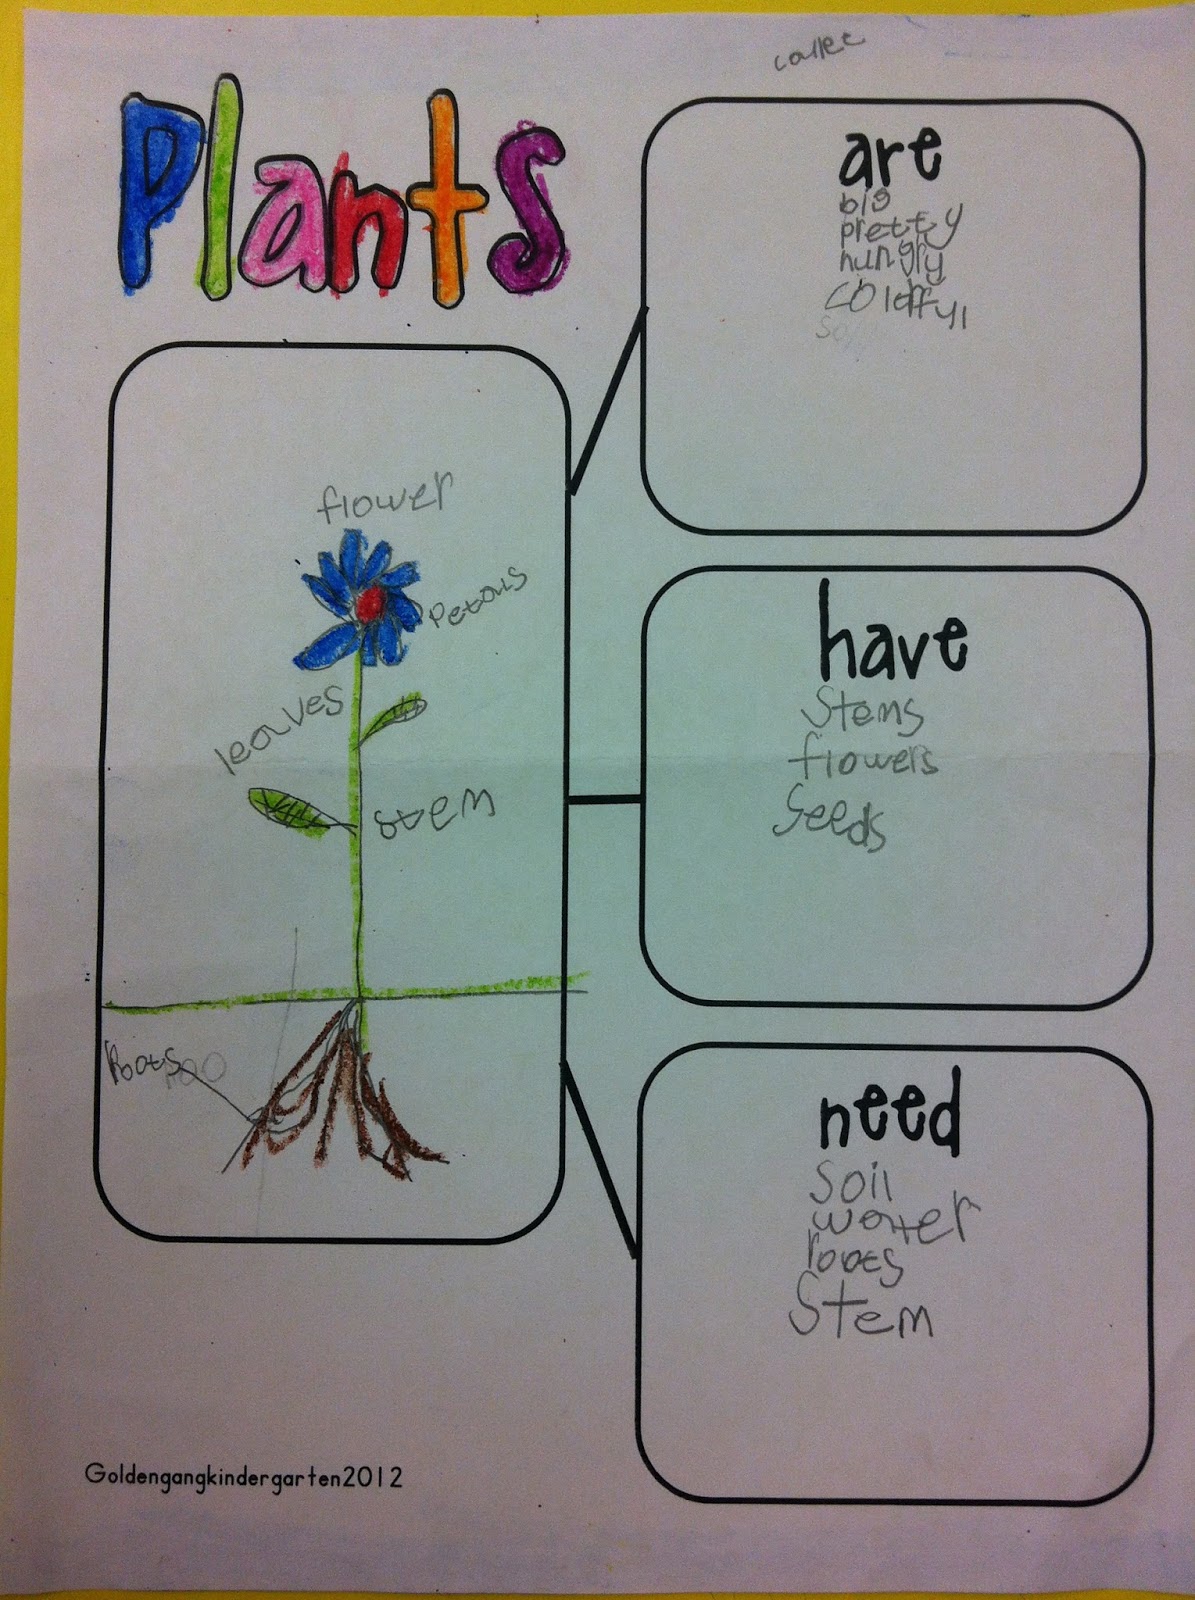 Little Miss Hood's Adventures in Kindergarten: Plants